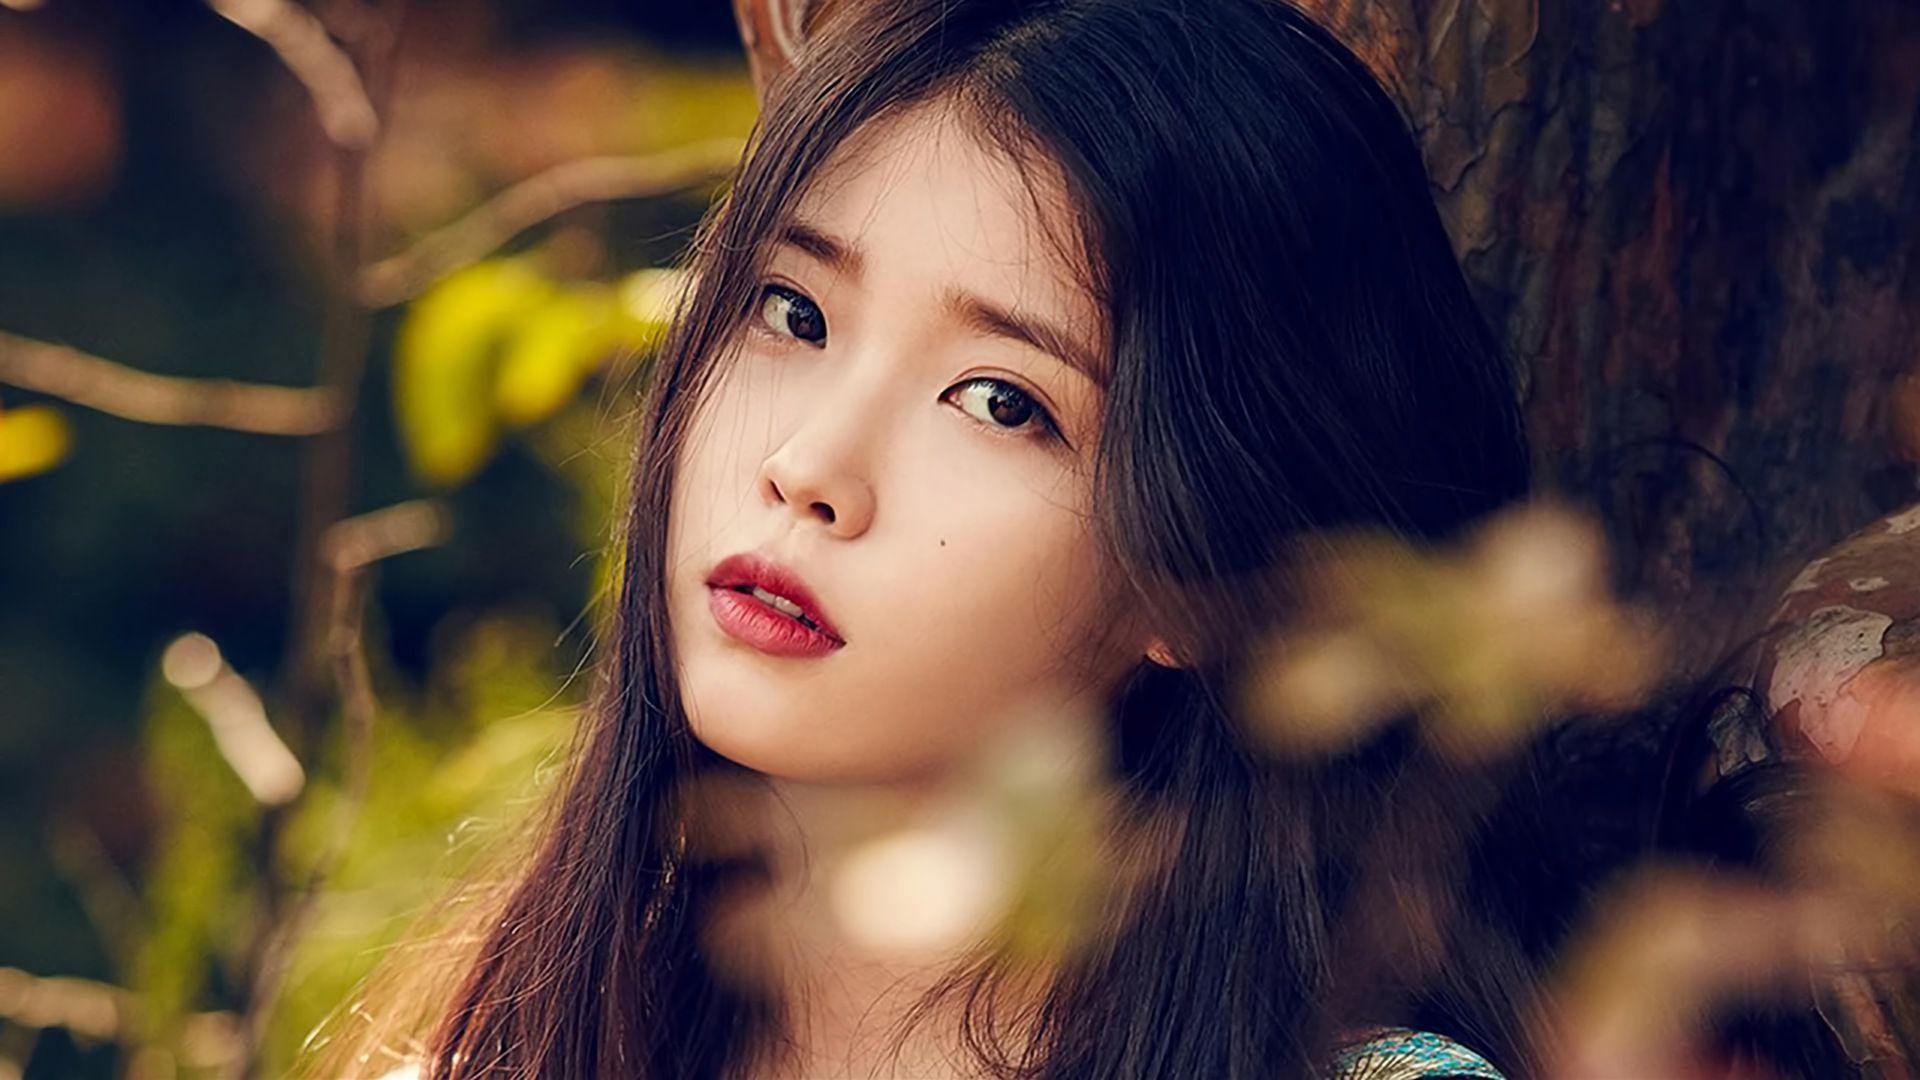 IU K Pop Beautiful Asian Singer Wallpaper. IU In 2018